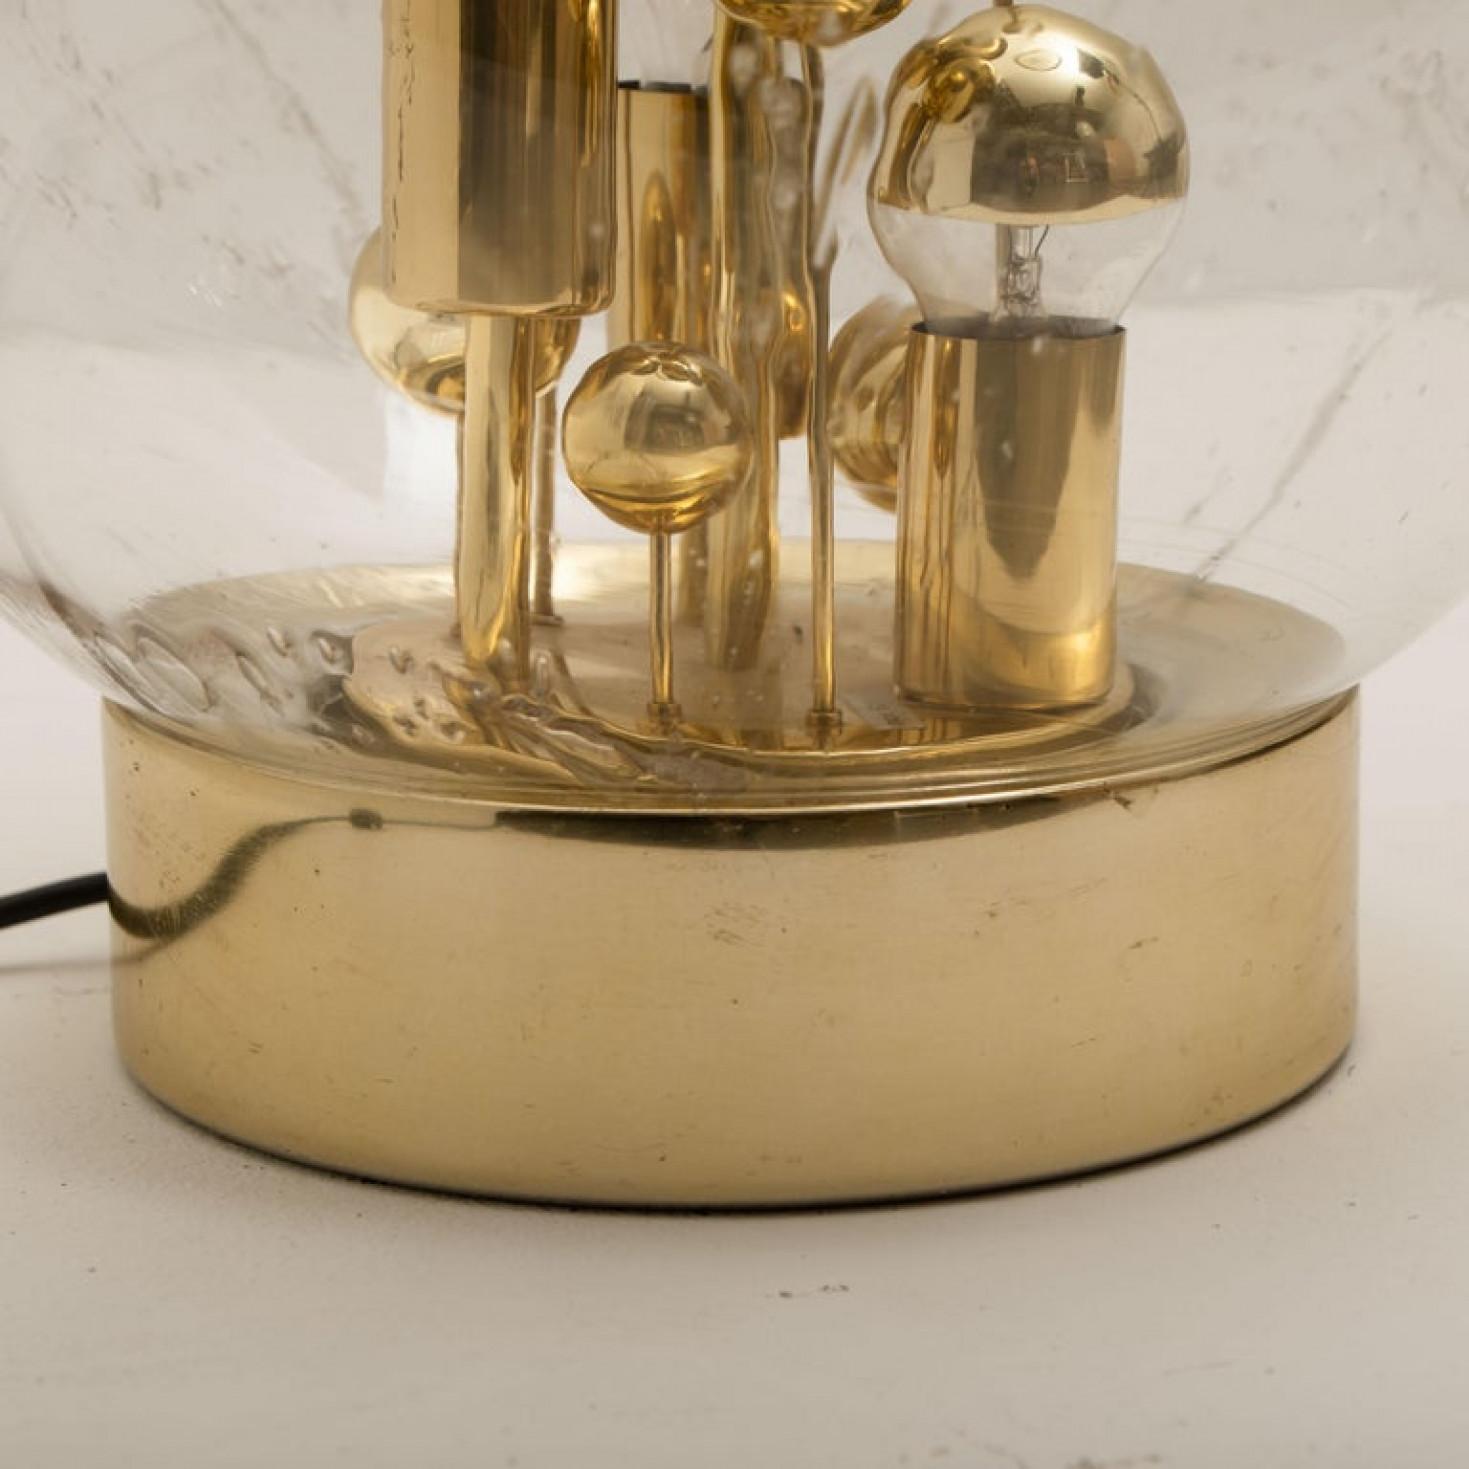 1 des 2 énormes lampes Doria en verre soufflé à la main sur base en laiton, Allemagne, circa 1970. Cet artefact exceptionnel de design moderne reflète l'intérêt extrême porté au modernisme dans toute l'Europe au cours de cette période. Cette lampe